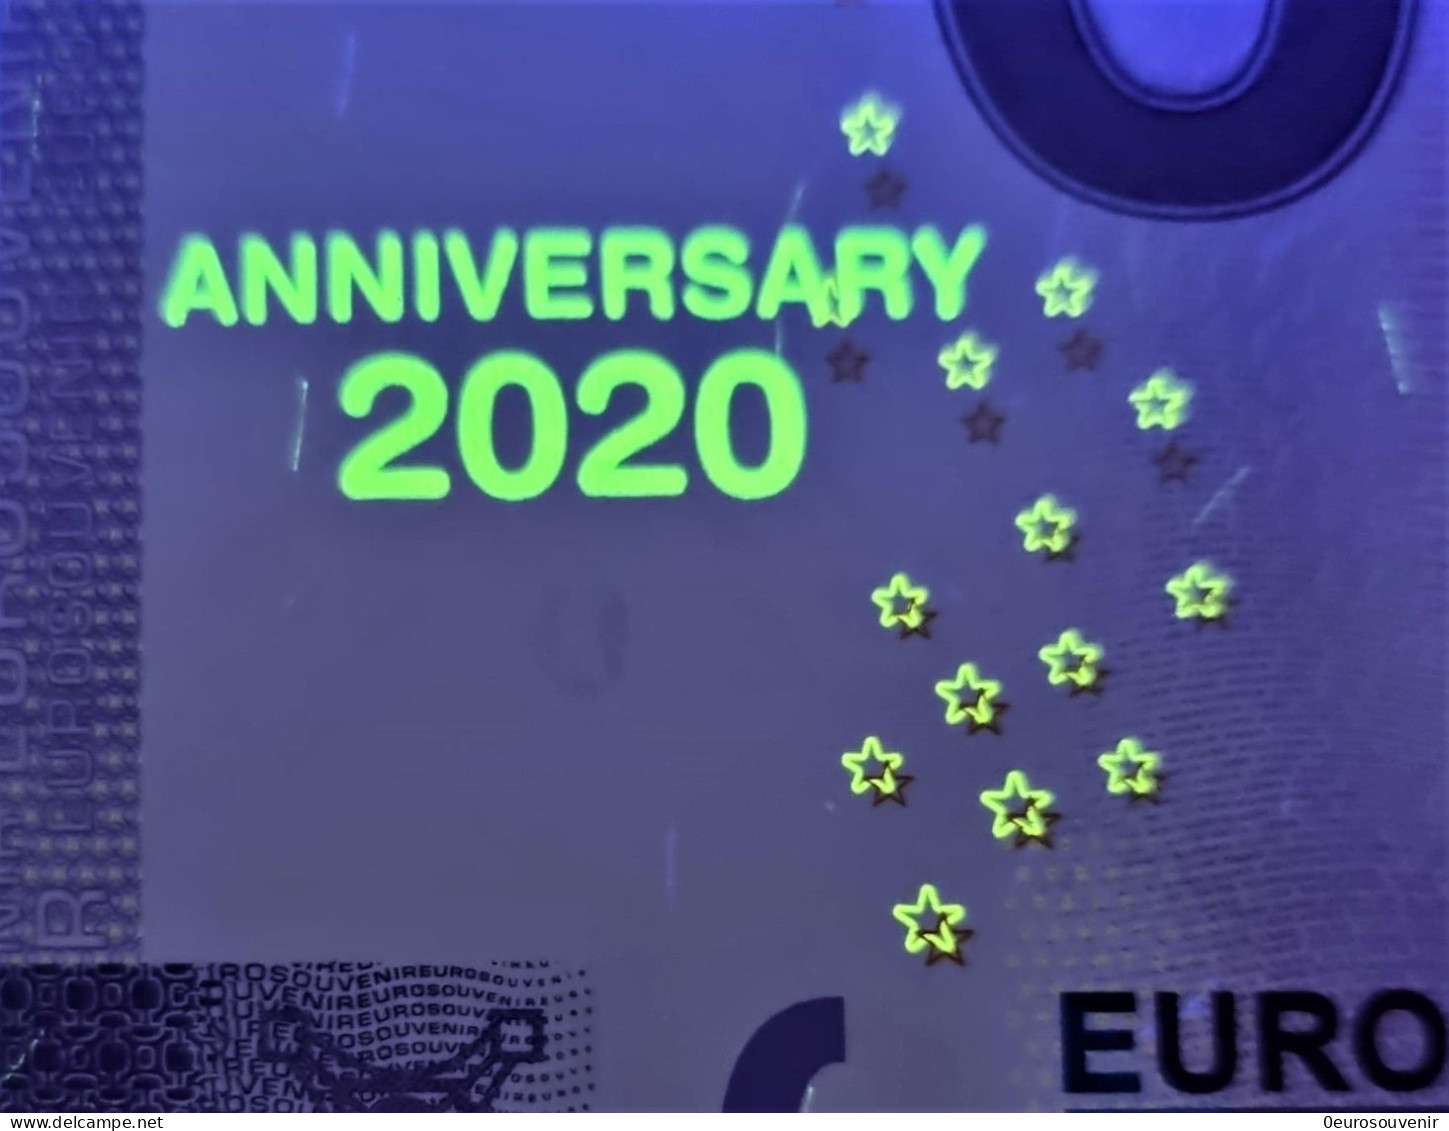 0-Euro XEMQ 1 2020 KRUMMHÖRN-GREETSIEL - CAMPENER LEUCHTTURM Set NORMAL+ANNIVERSARY - Essais Privés / Non-officiels